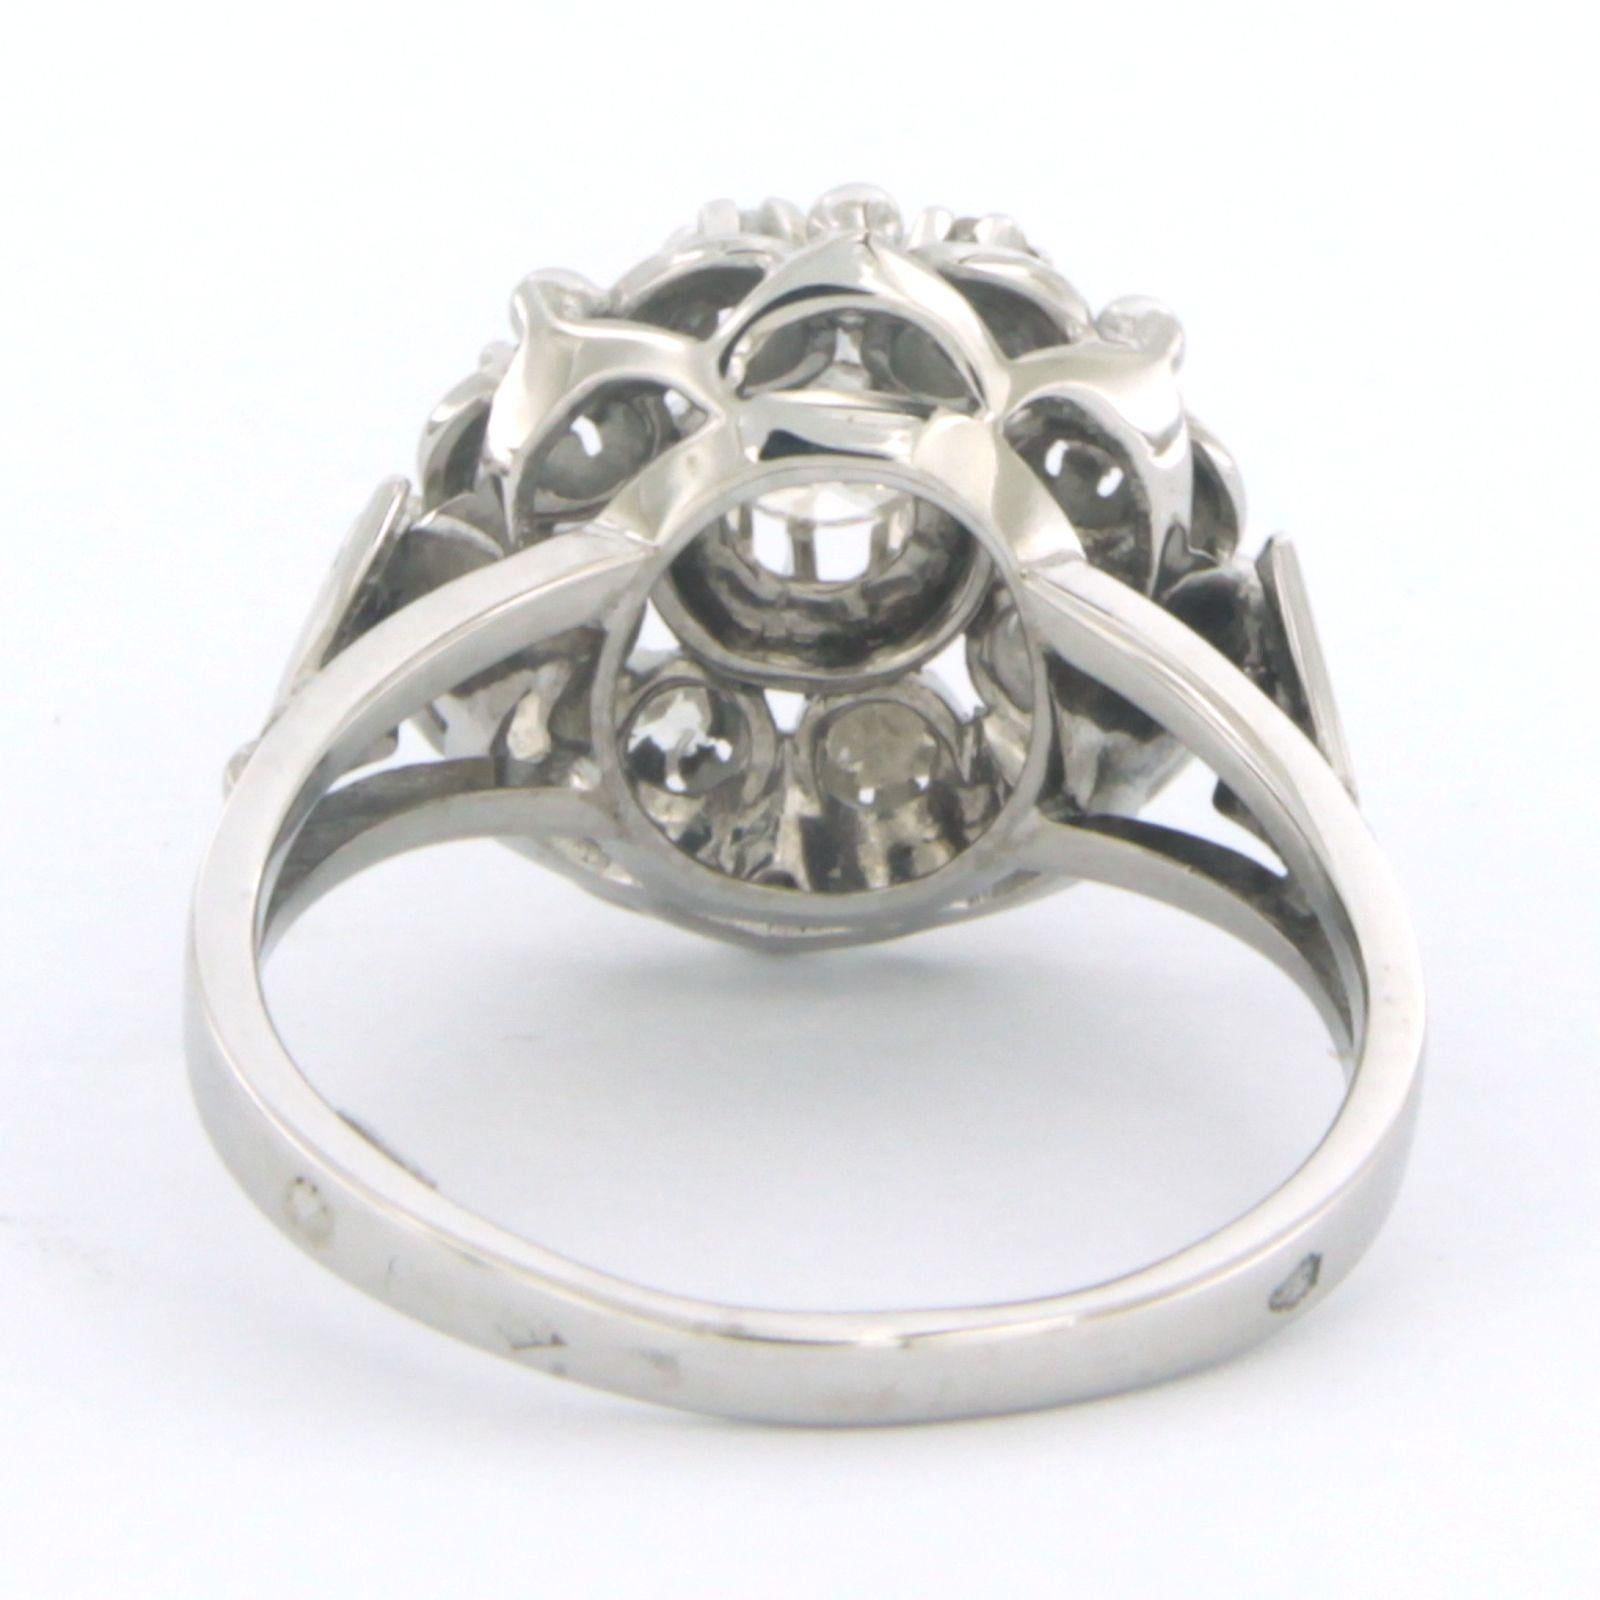 Ring aus 18 Karat Weißgold, besetzt mit Diamanten im Brillant- und Rosenschliff. 0.30ct - K/L, G/H - VS,SI - Ringgröße U.S. 5.25 - EU. 16 (50)

detaillierte Beschreibung:

Die Spitze des Rings ist 1,3 cm breit und 7,7 mm hoch.

Gewicht: 3,8